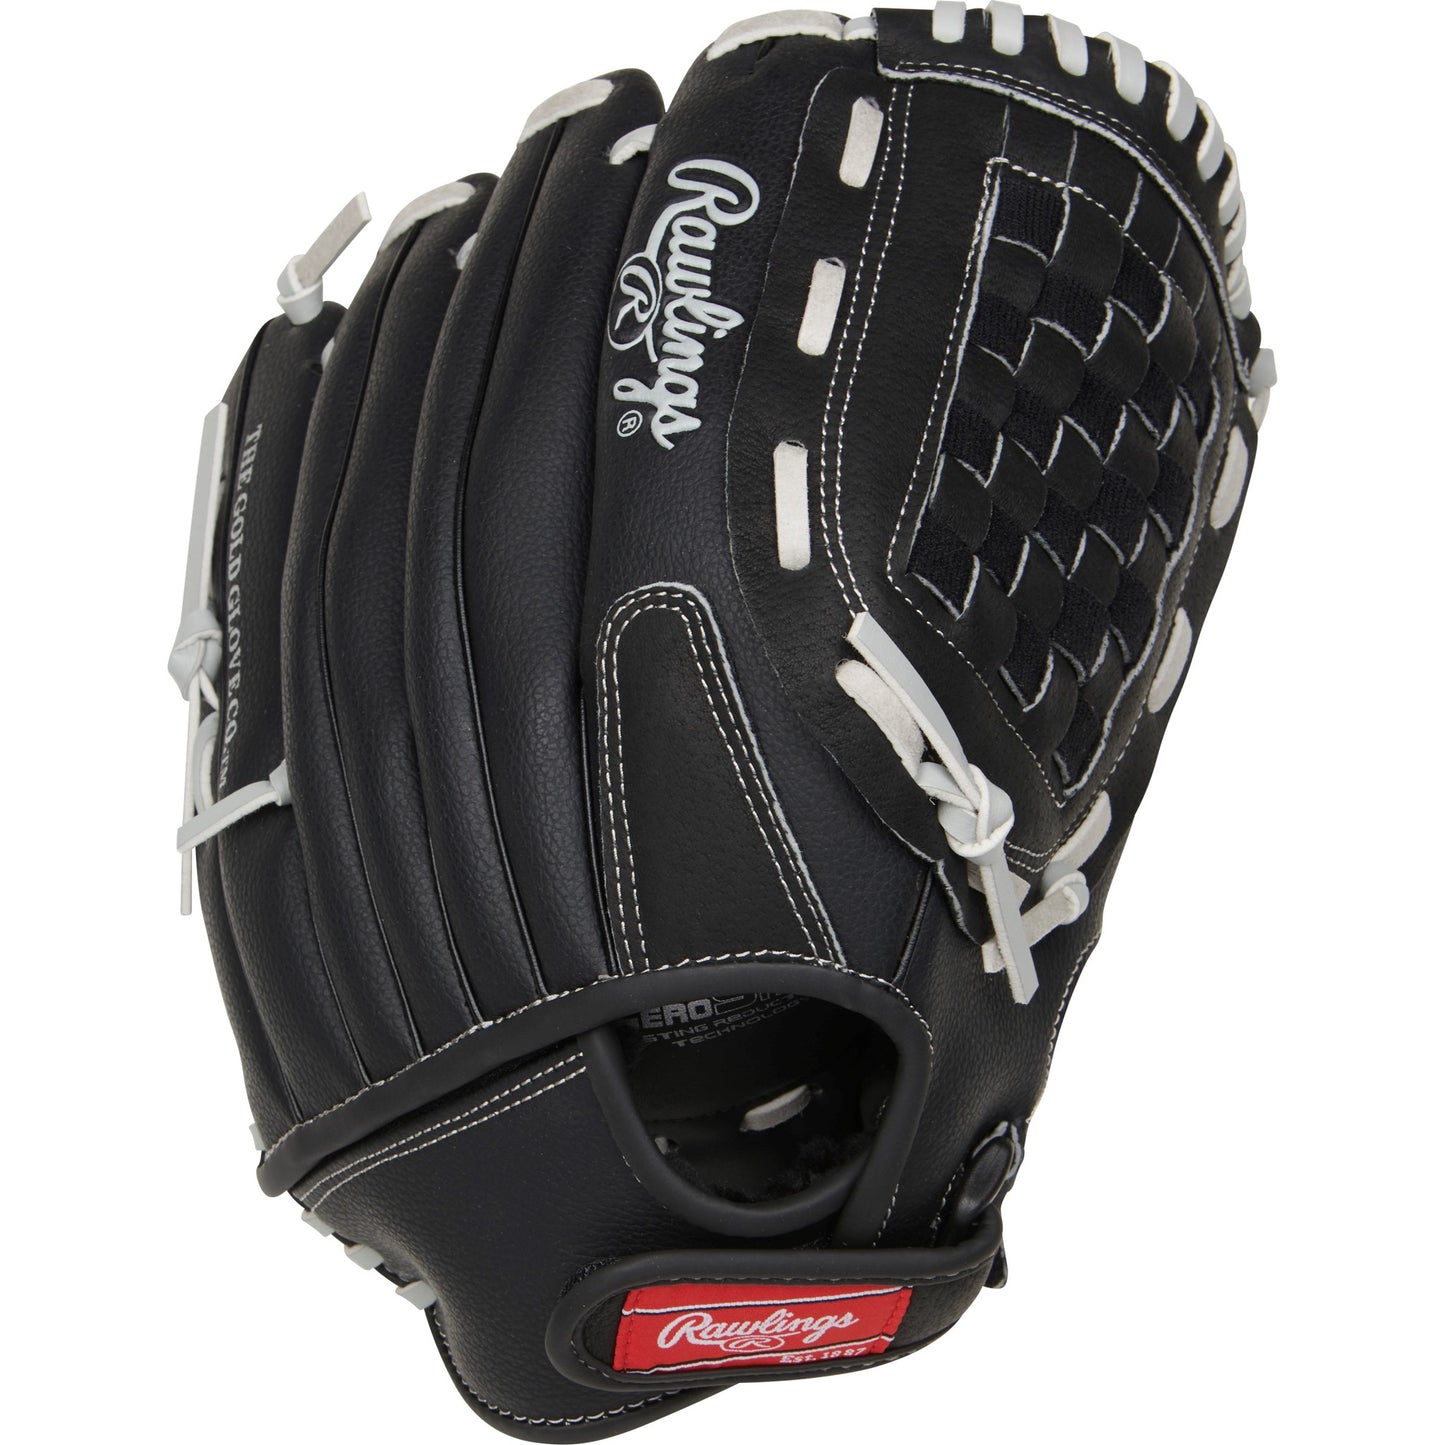 Rawlings (RSB125GB) RSB™B Series 12.5" Baseball/Softball Glove